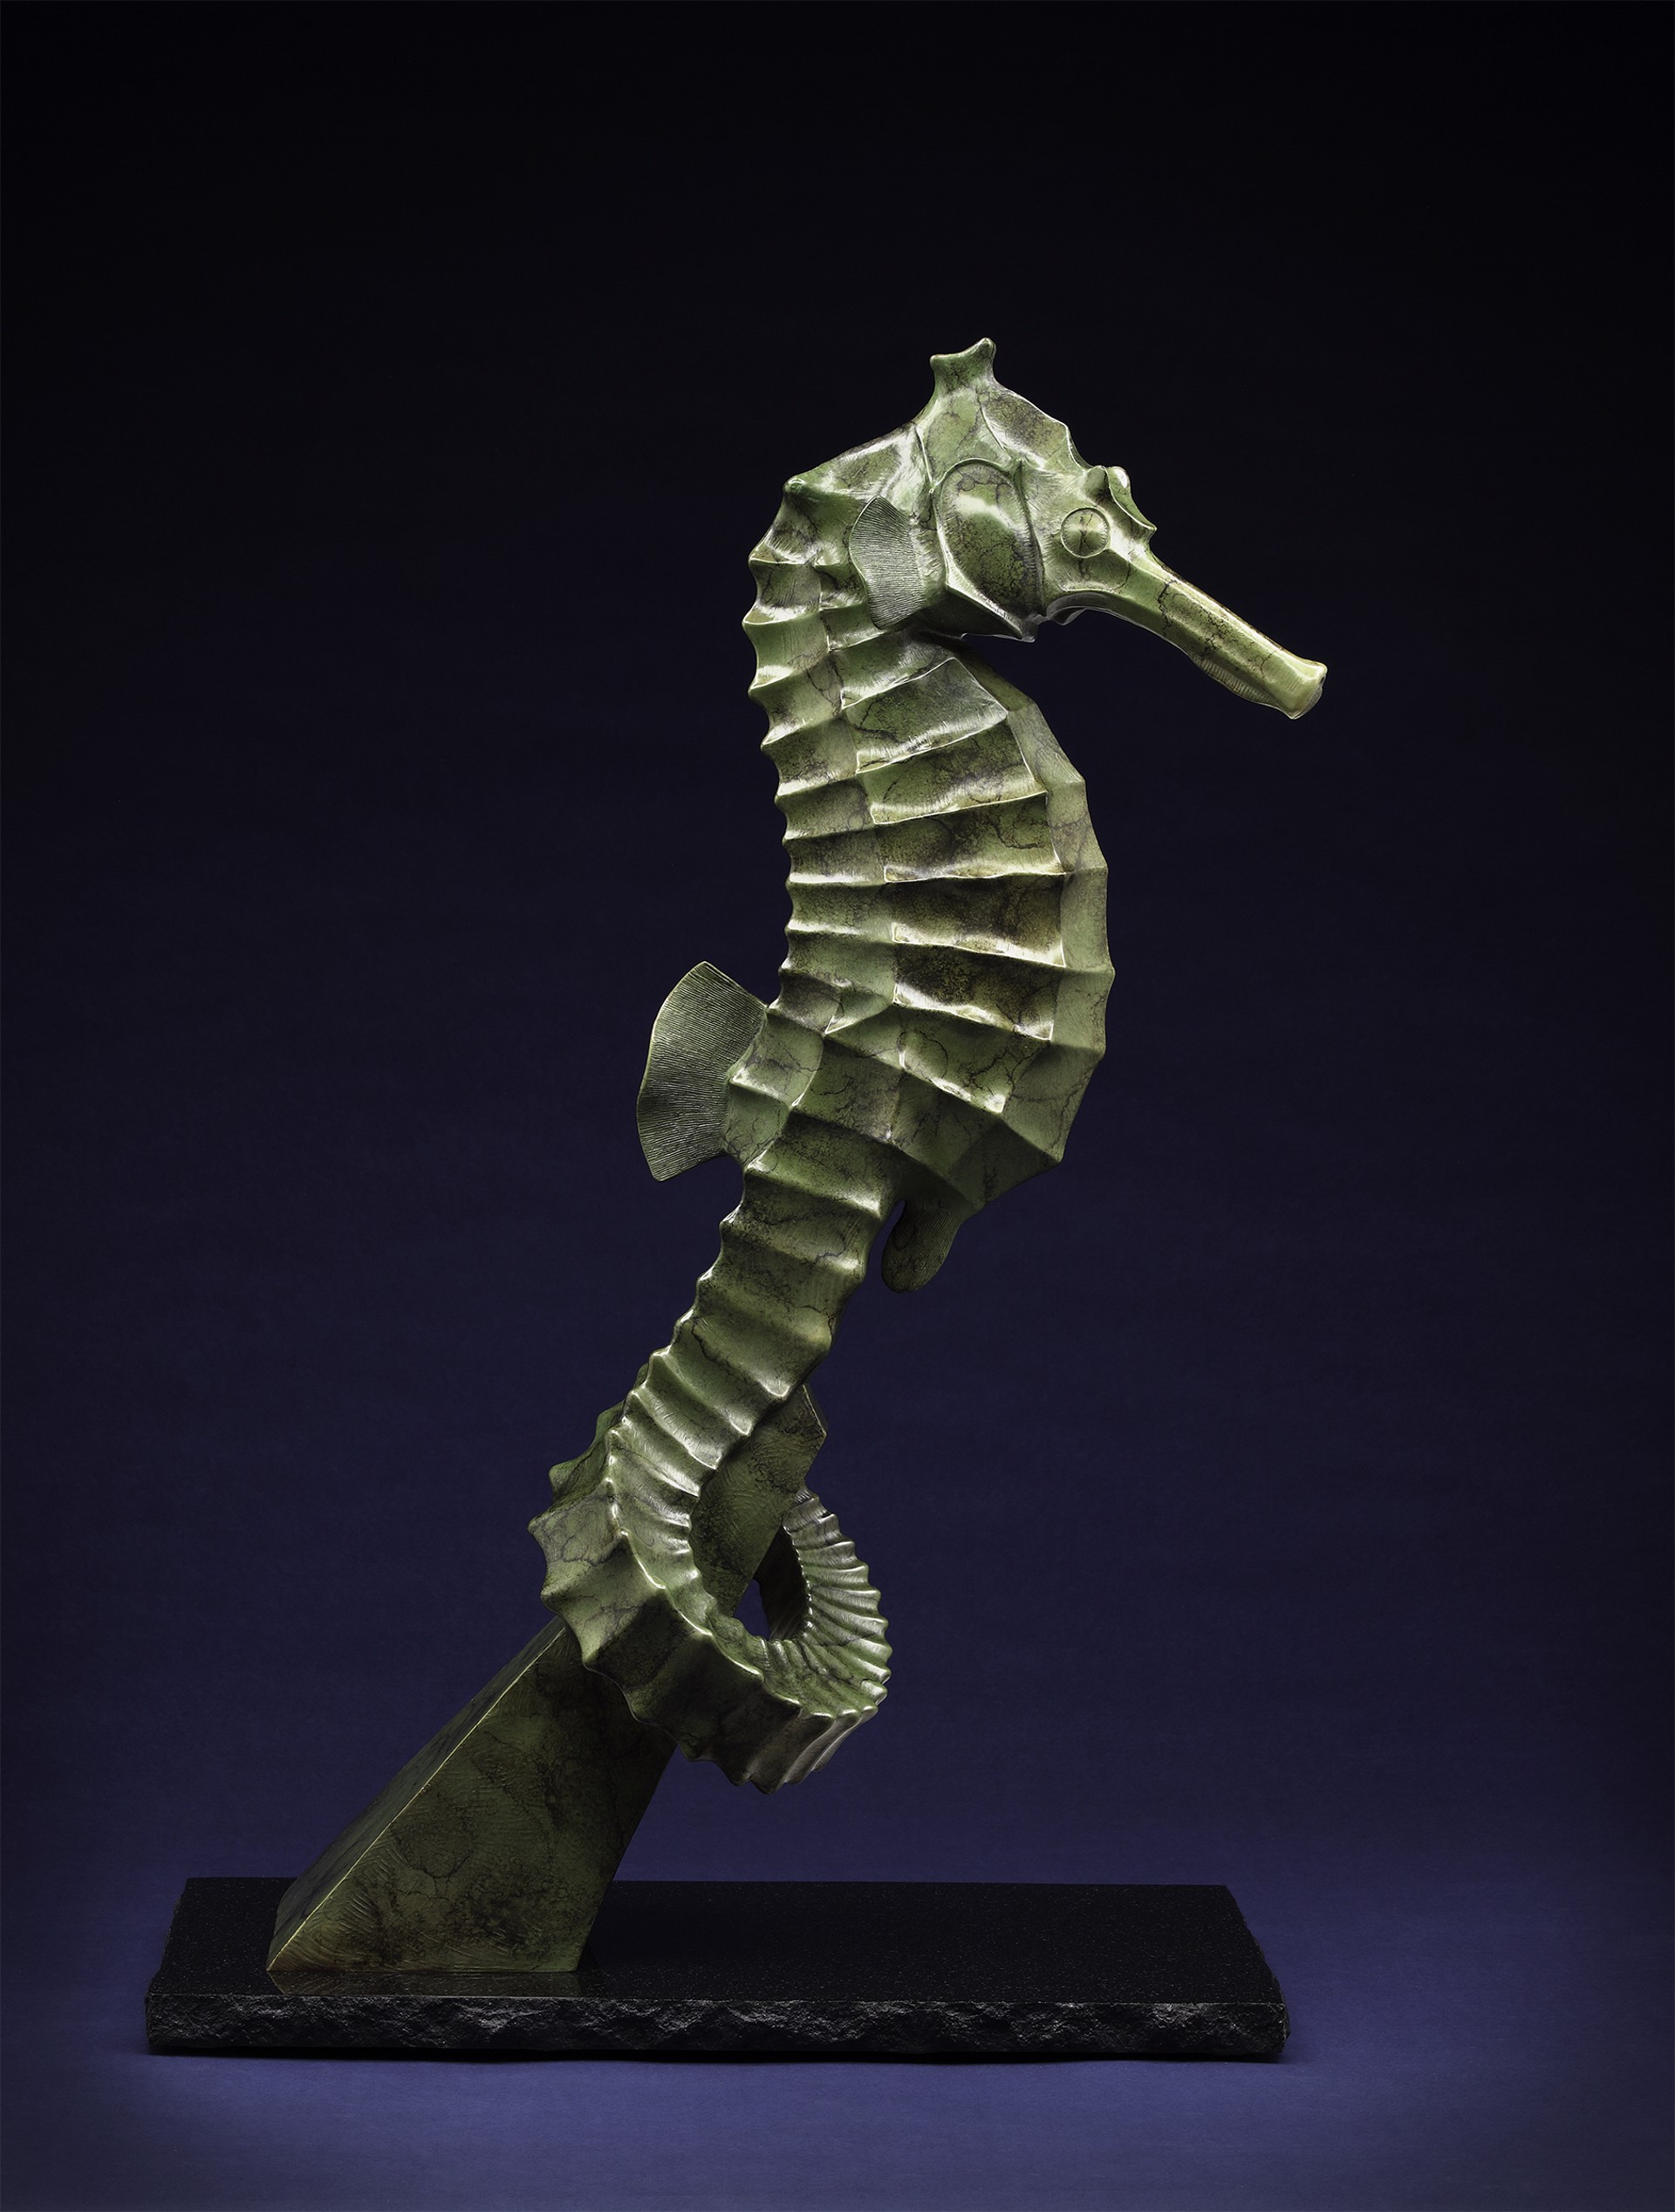 The Seahorse by Tony Hochstetler